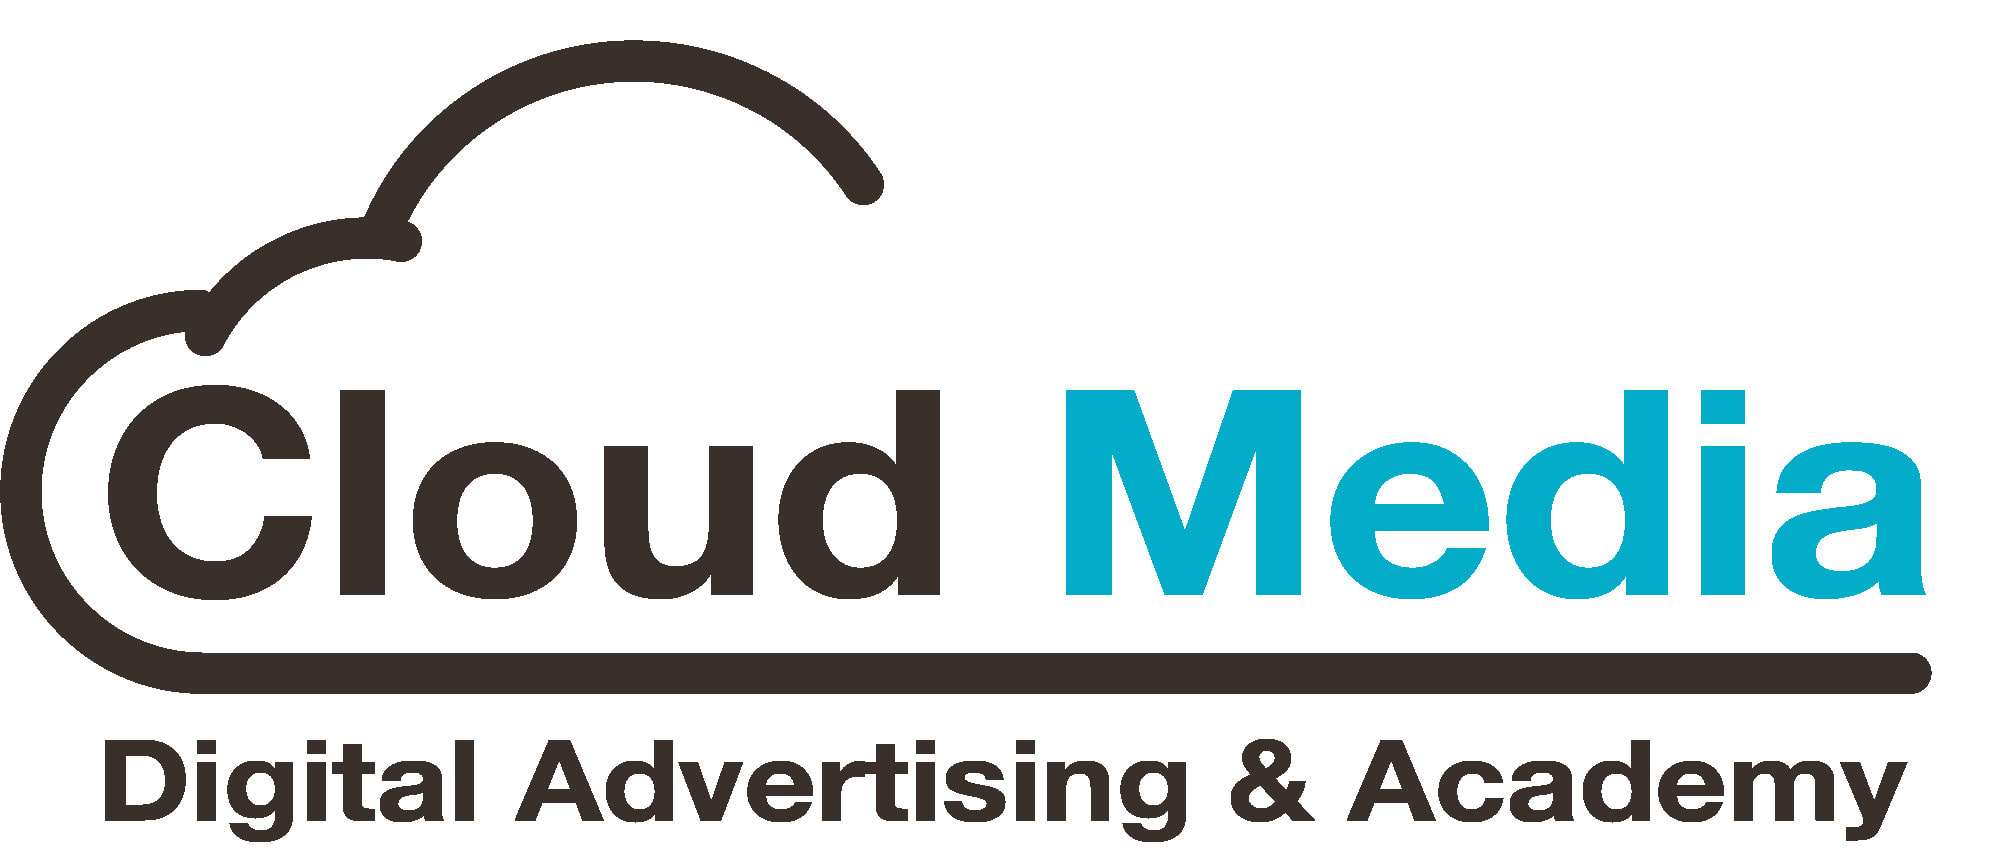 Cloud Media-1